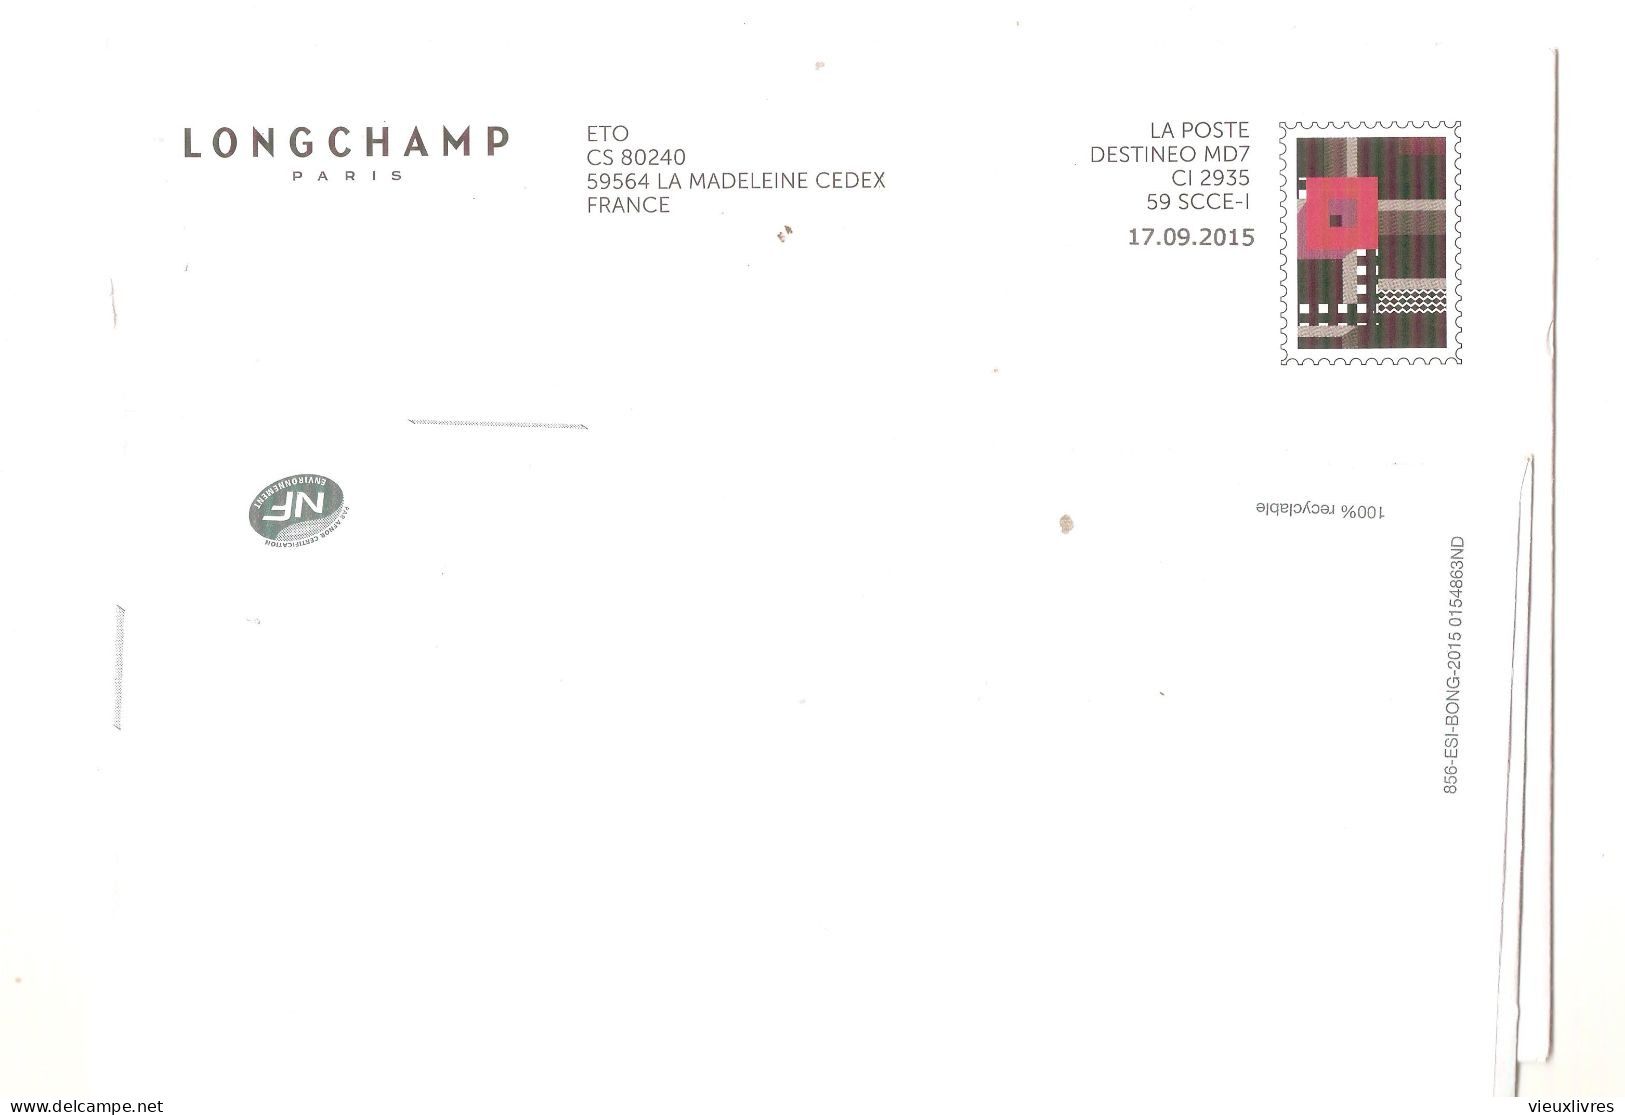 Longchamp Pseudo-entier Postal Sur Enveloppe Destineo MD7 CI 2935 59 SCCE-1 CS 80240 59564 La Madeleine - Privatganzsachen